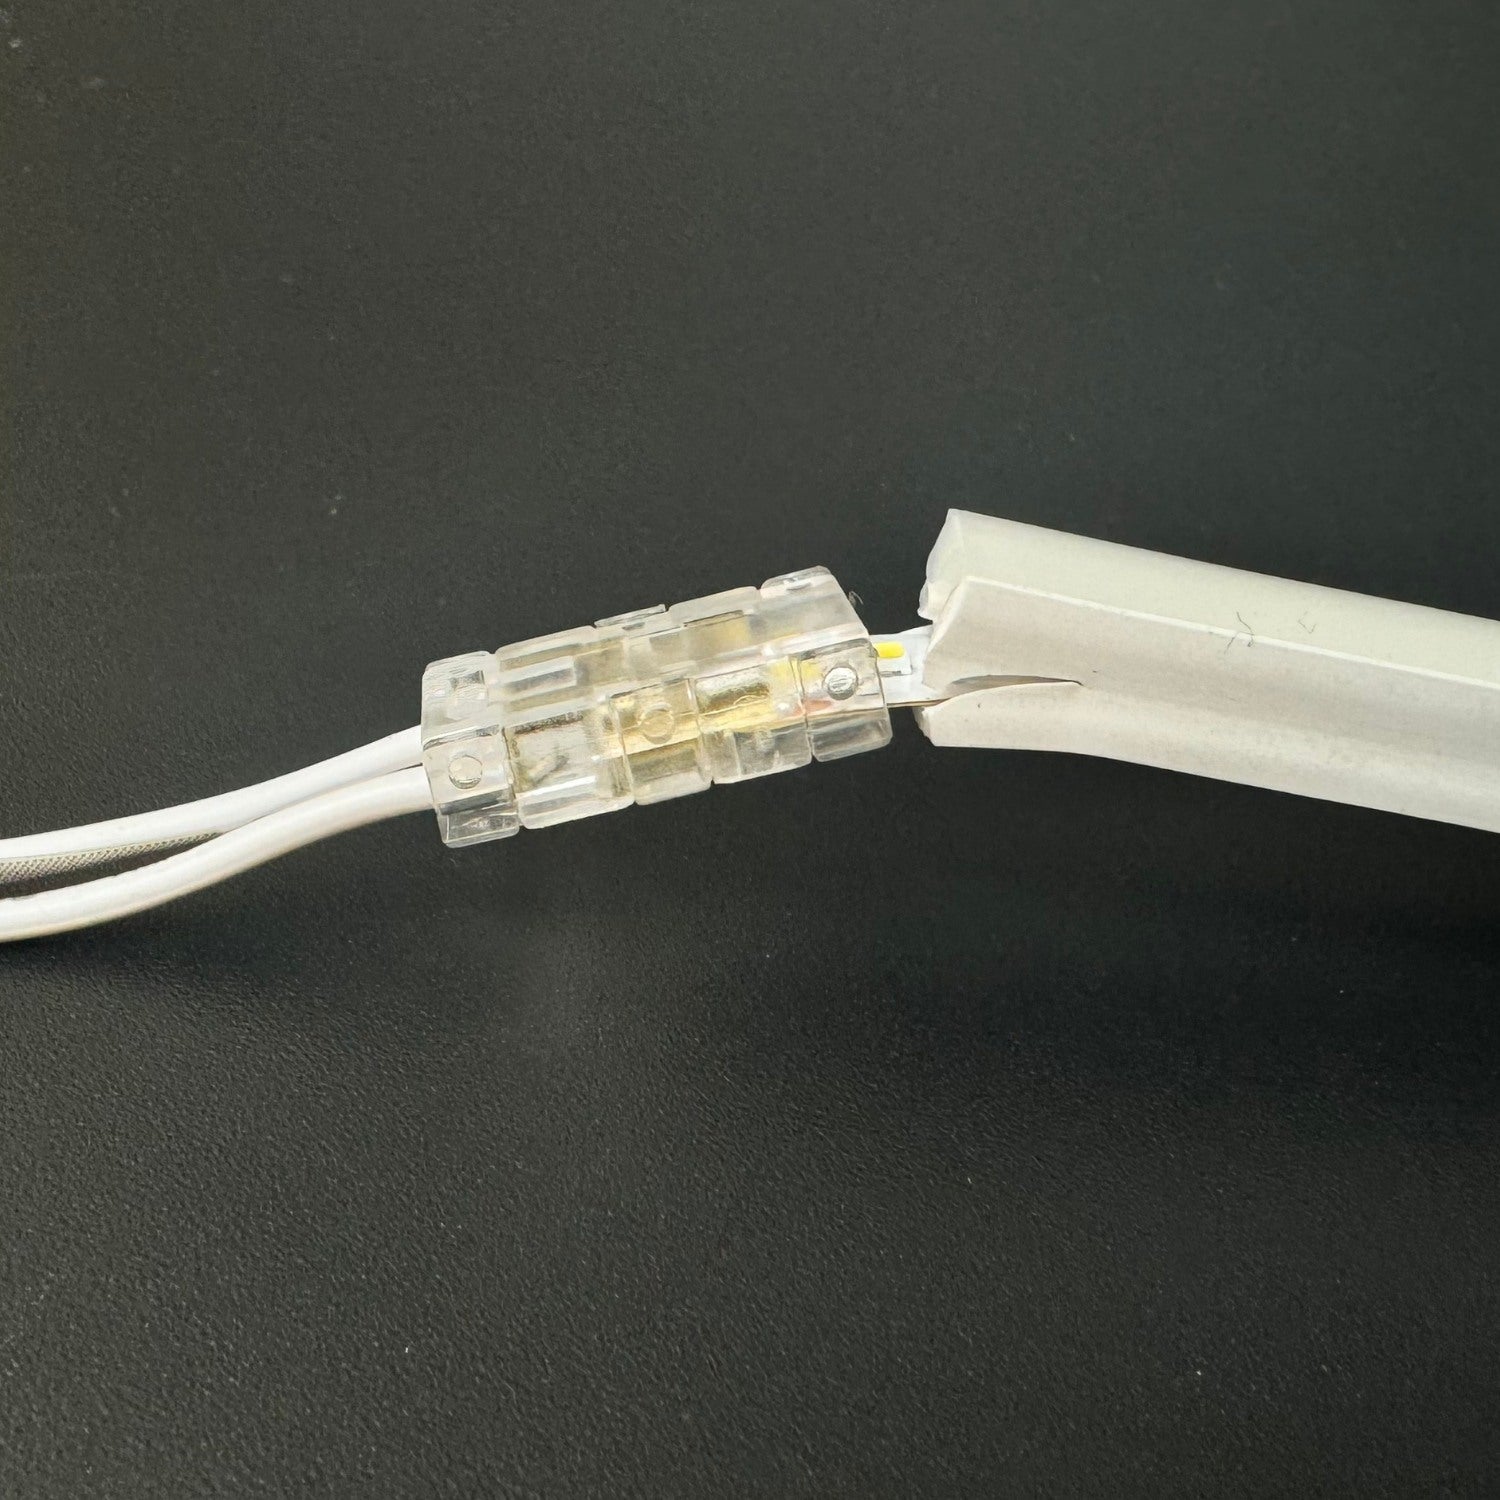 12V/24V LED Strip Light Extension Cable for 5mm & 8mm Strip - ATOM LED